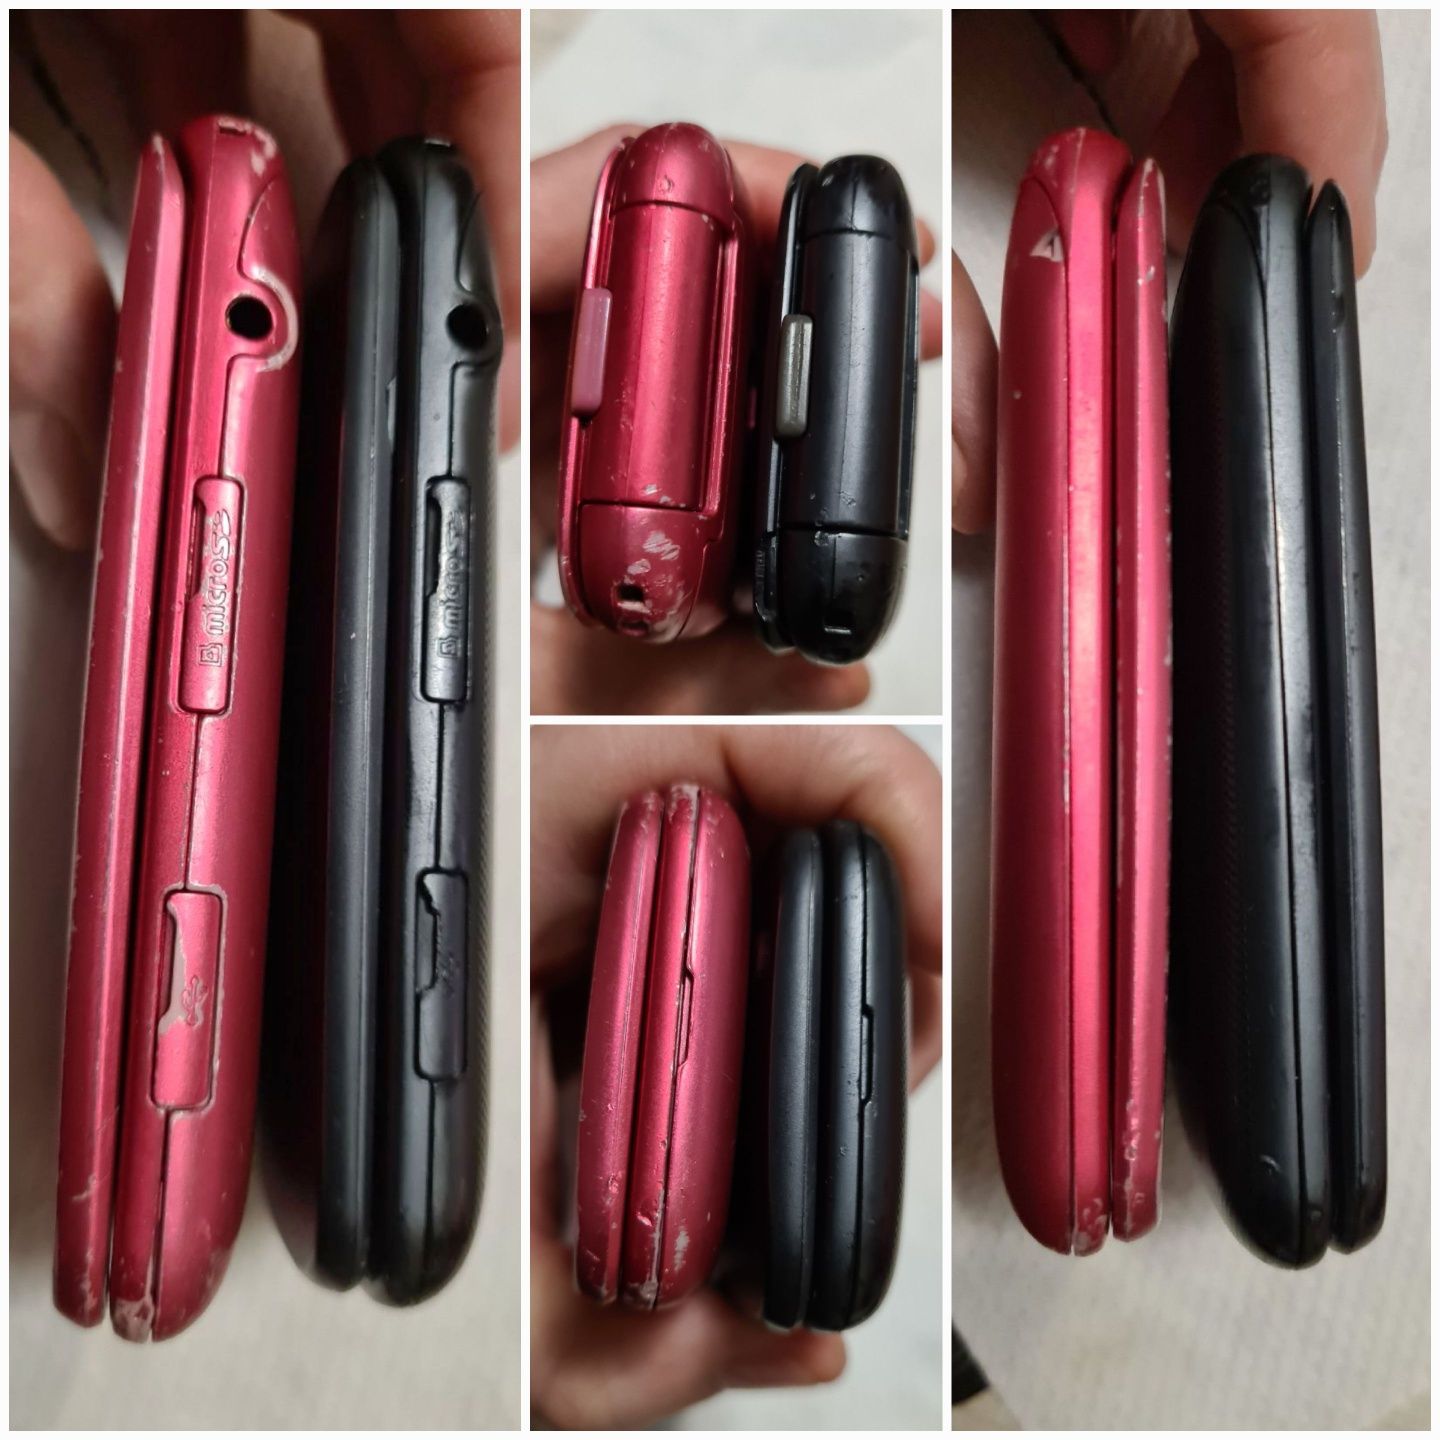 Мобілка Кнопочний Телефон Розкладушка Samsung C3520